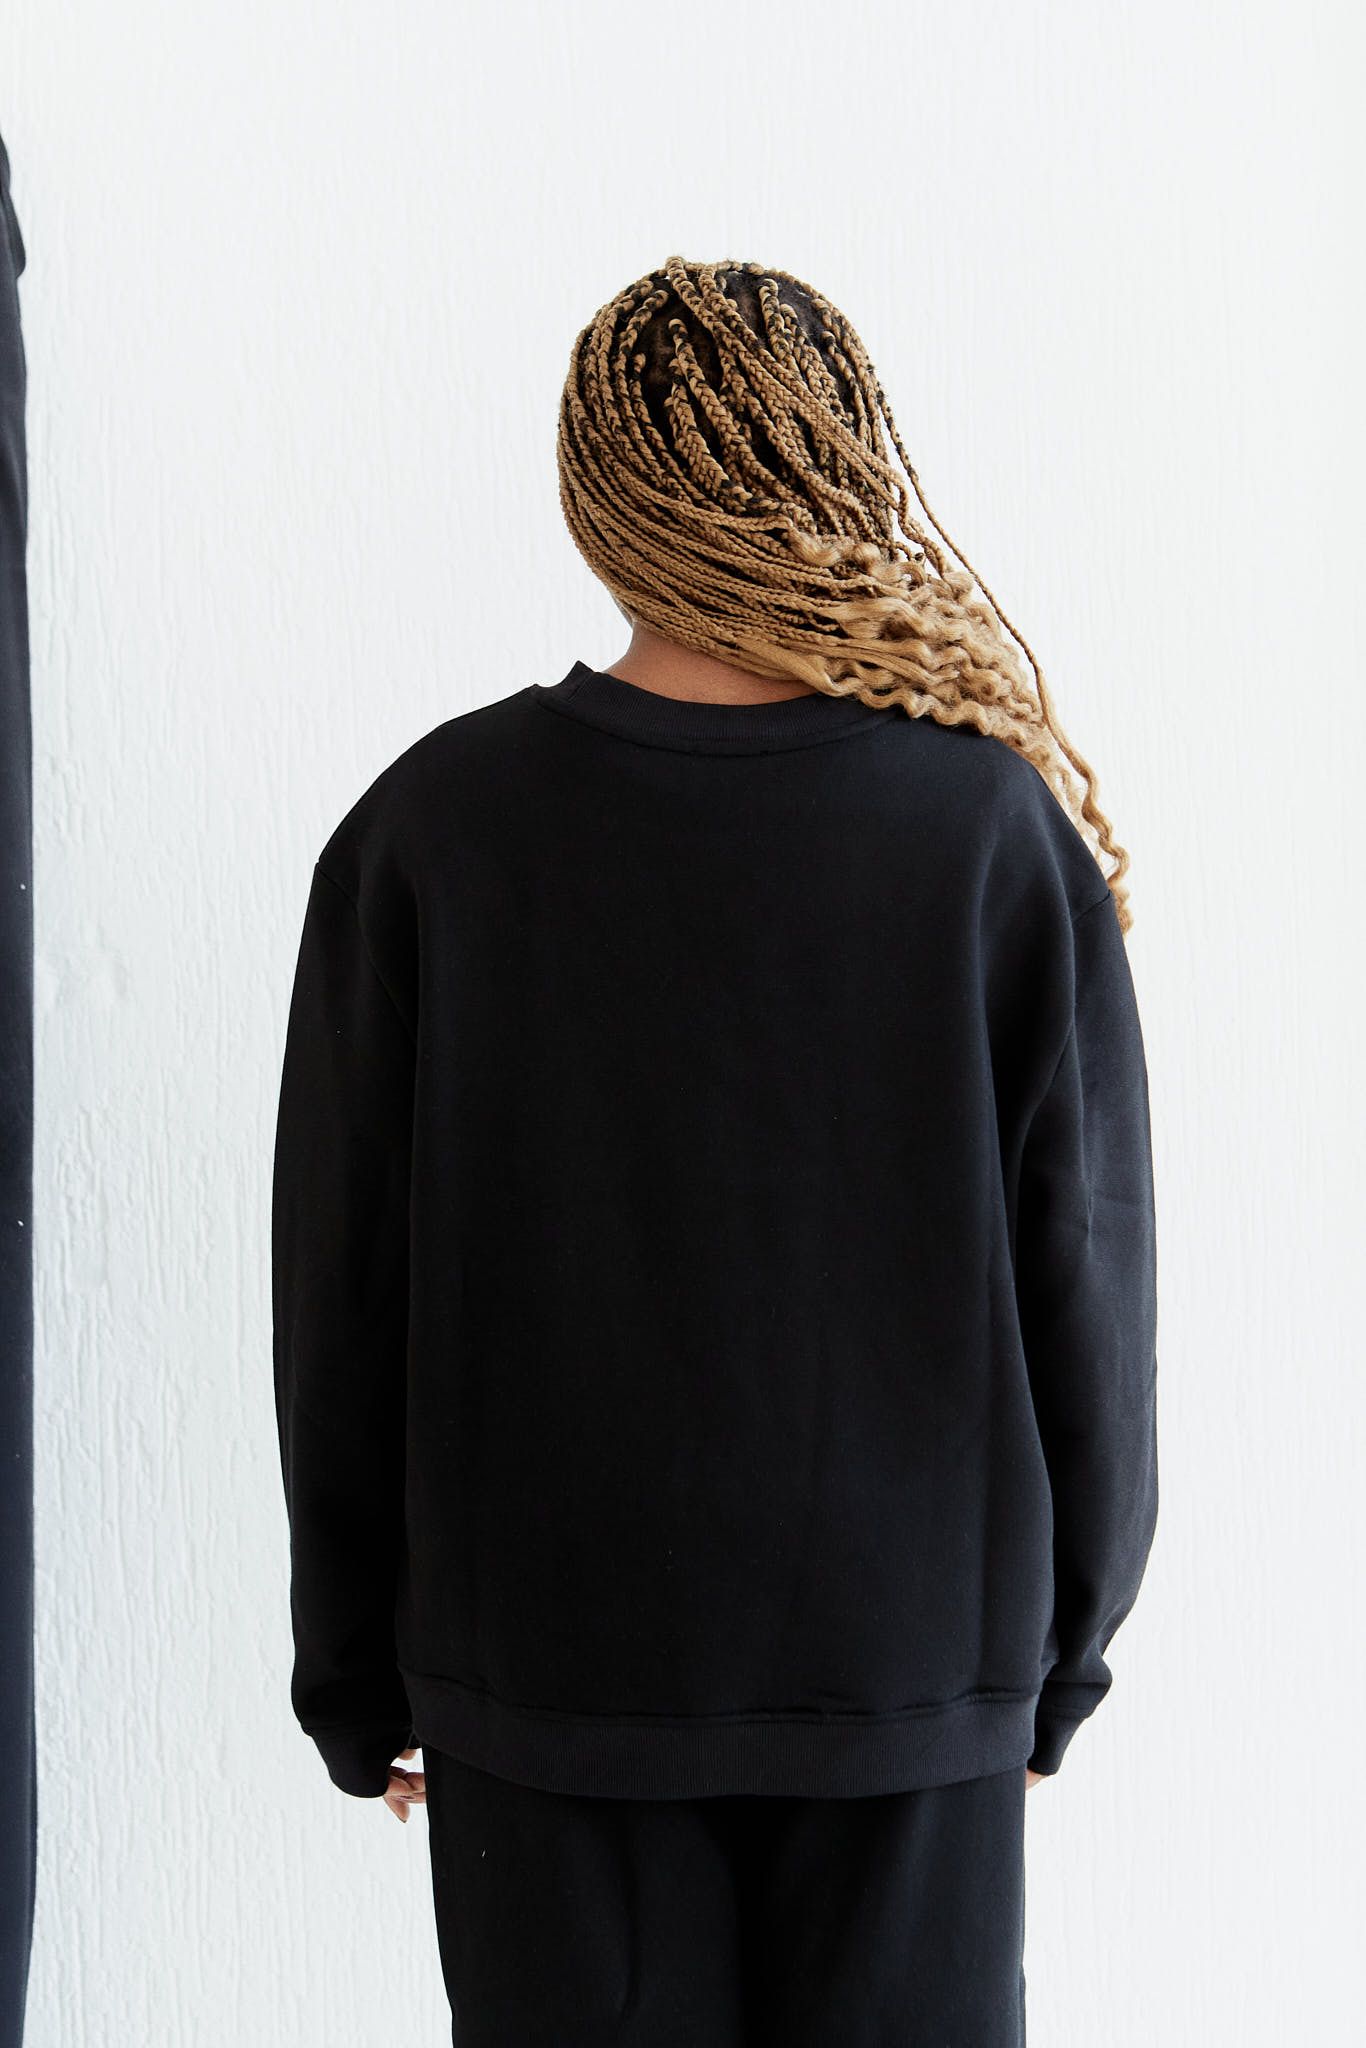 Product Image for Nima Sweatshirt, Black